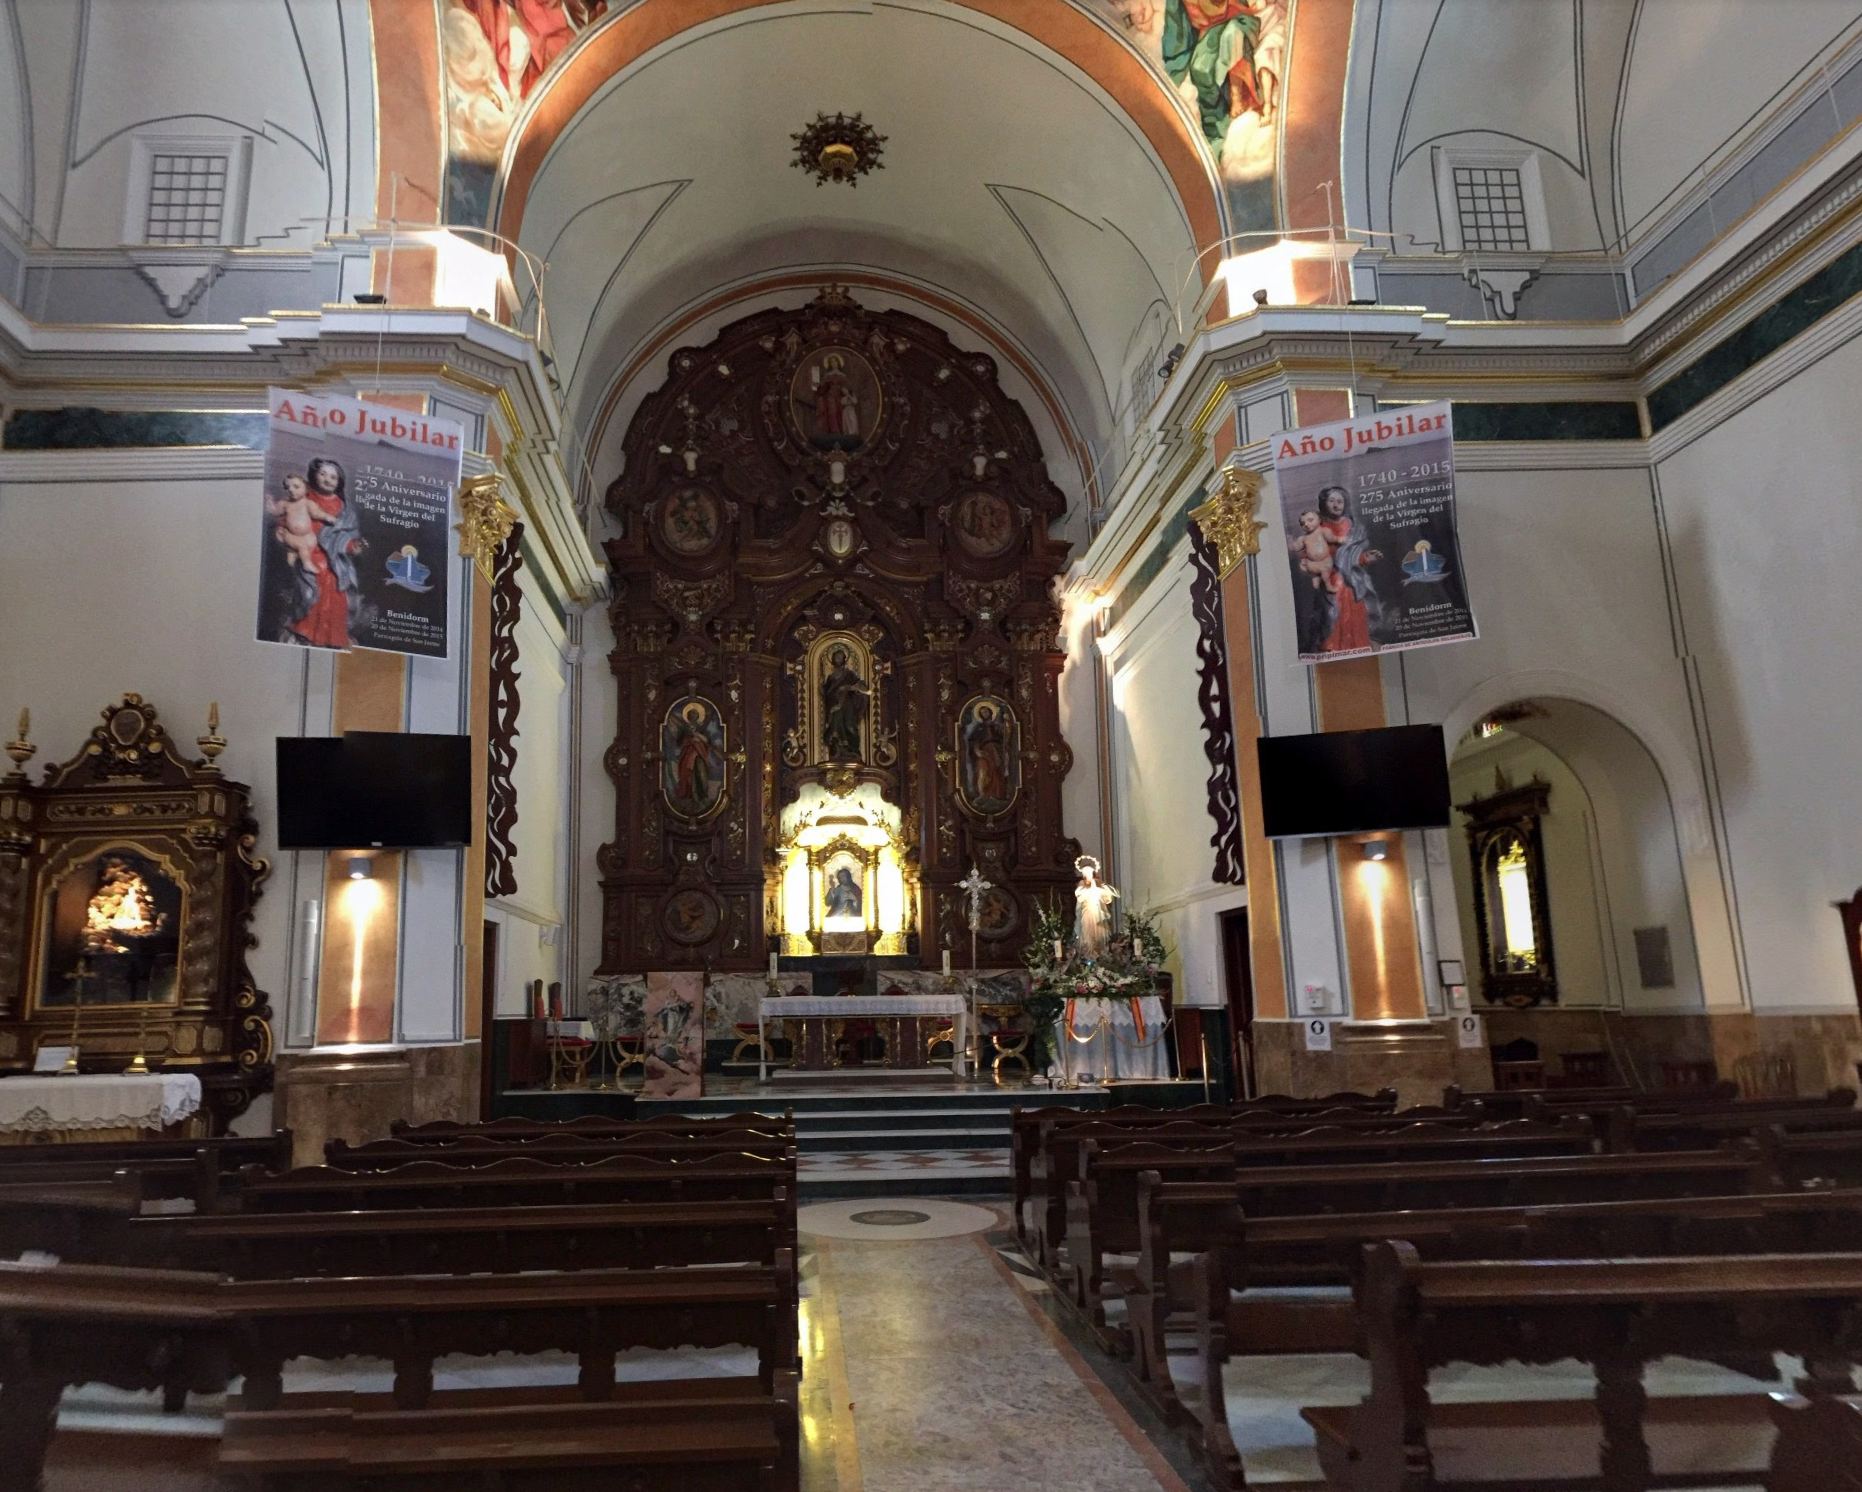 Church of San Jaime and Santa Ana